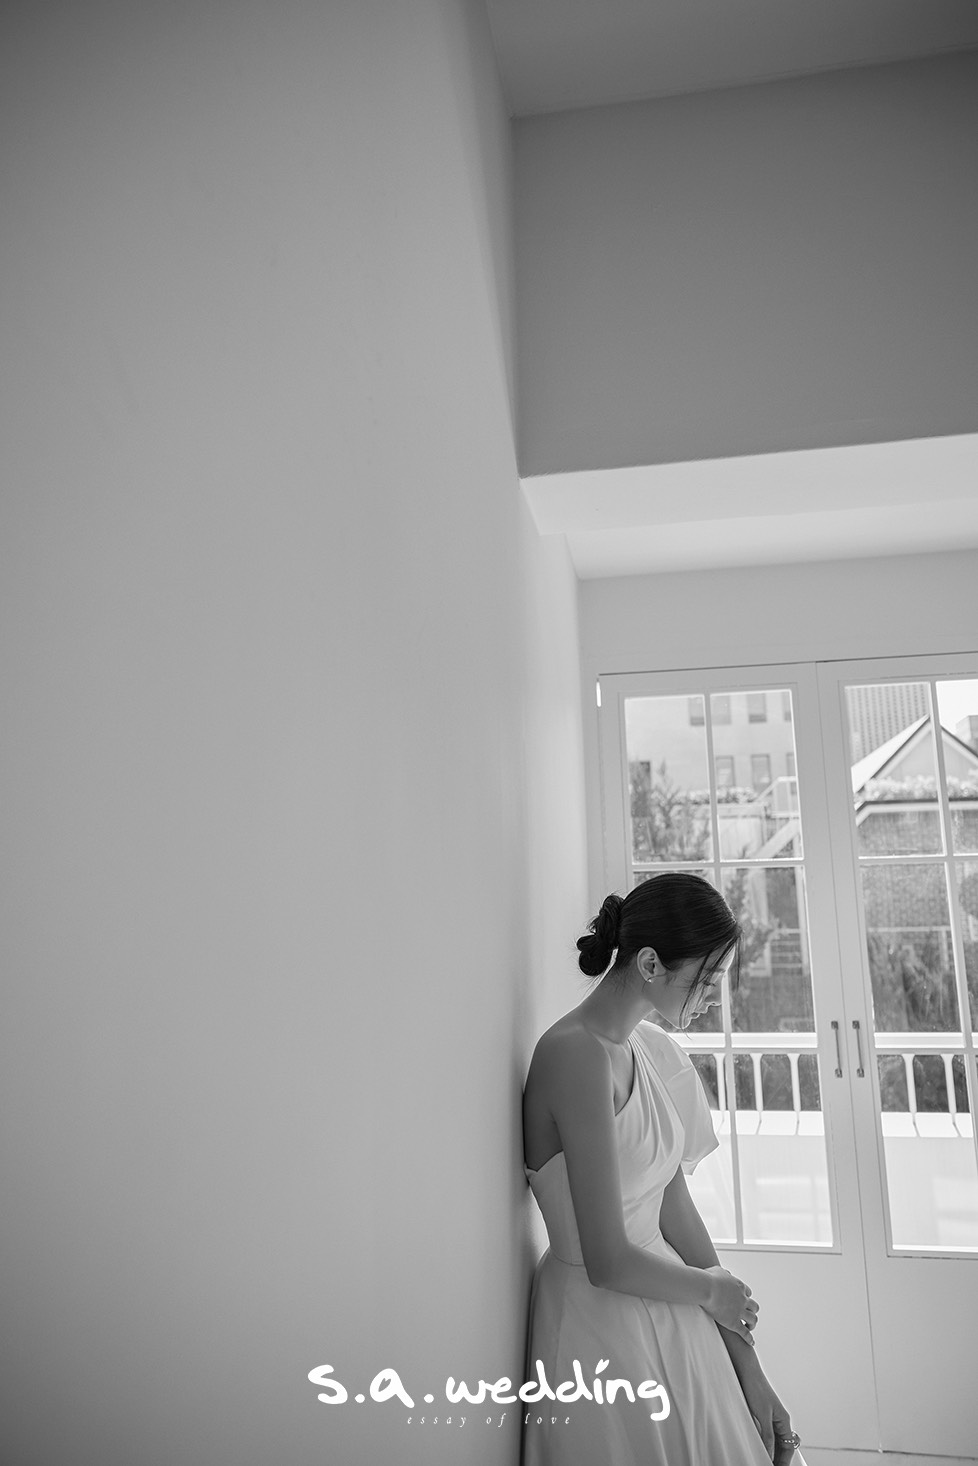 韓國婚攝 首爾婚攝 婚紗攝影 s.a. wedding 韓國室內婚紗攝影